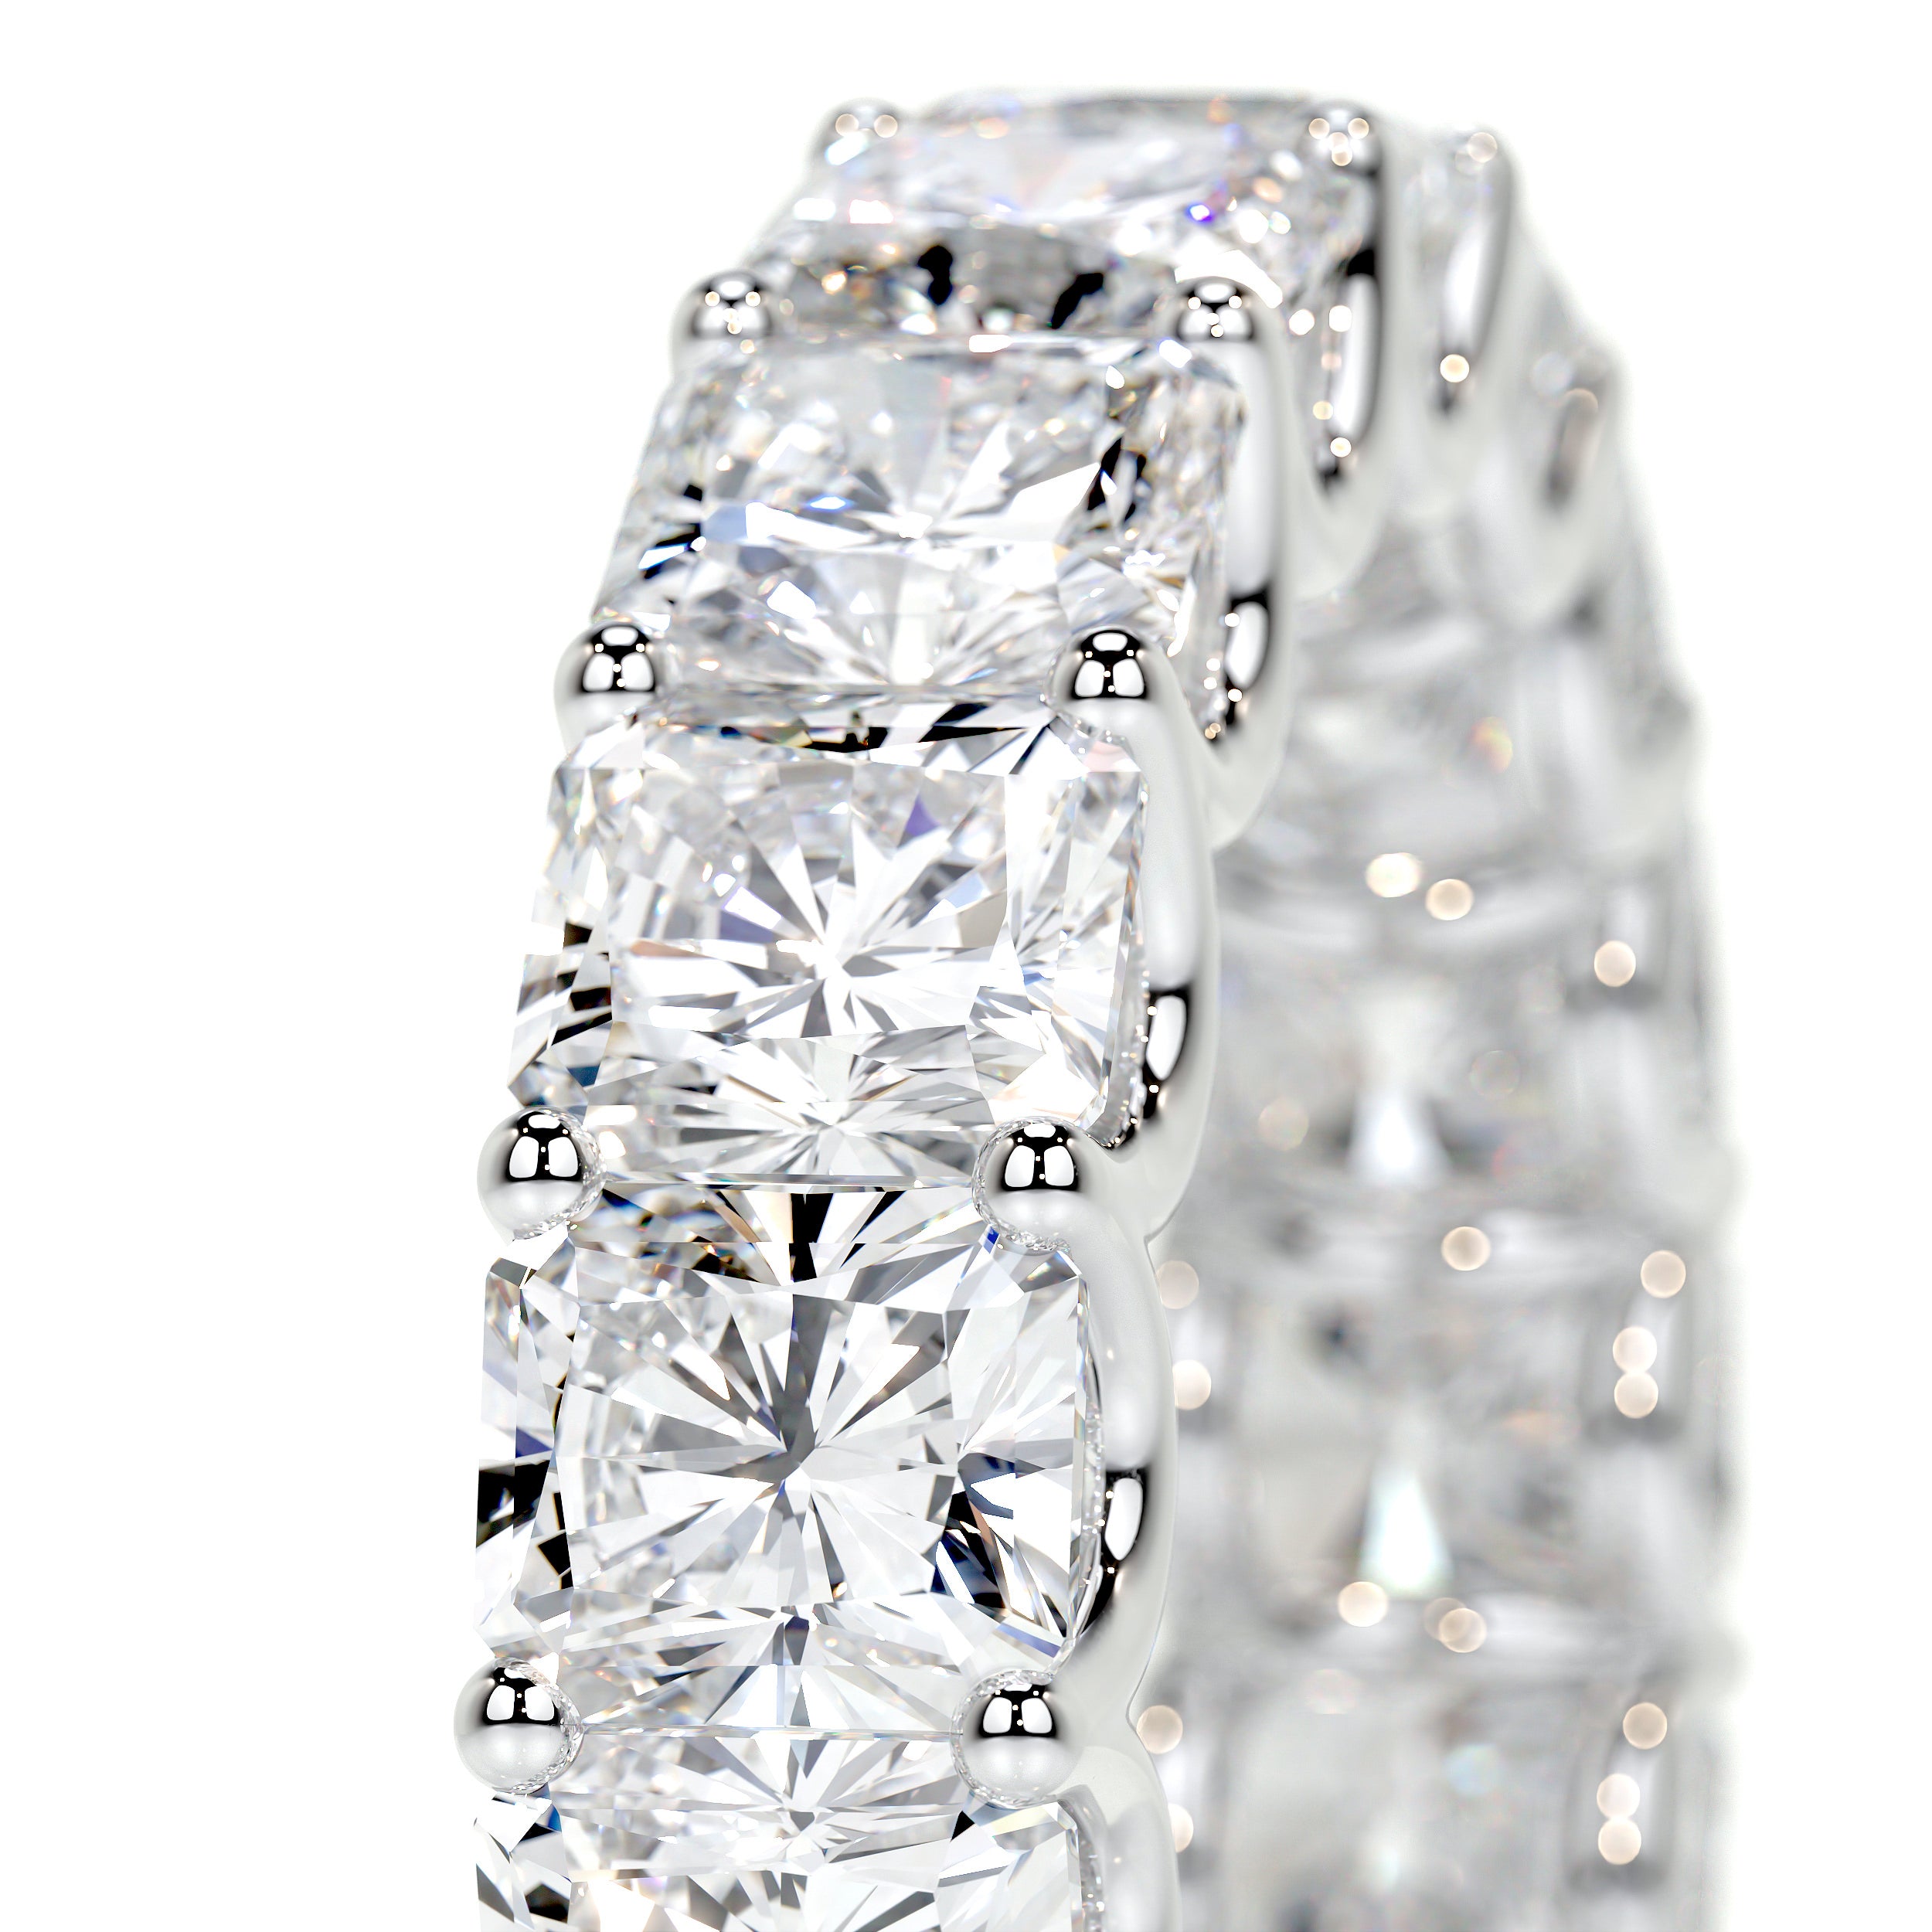 Andi Lab Grown Eternity Wedding Ring   (5 Carat) - 18K White Gold